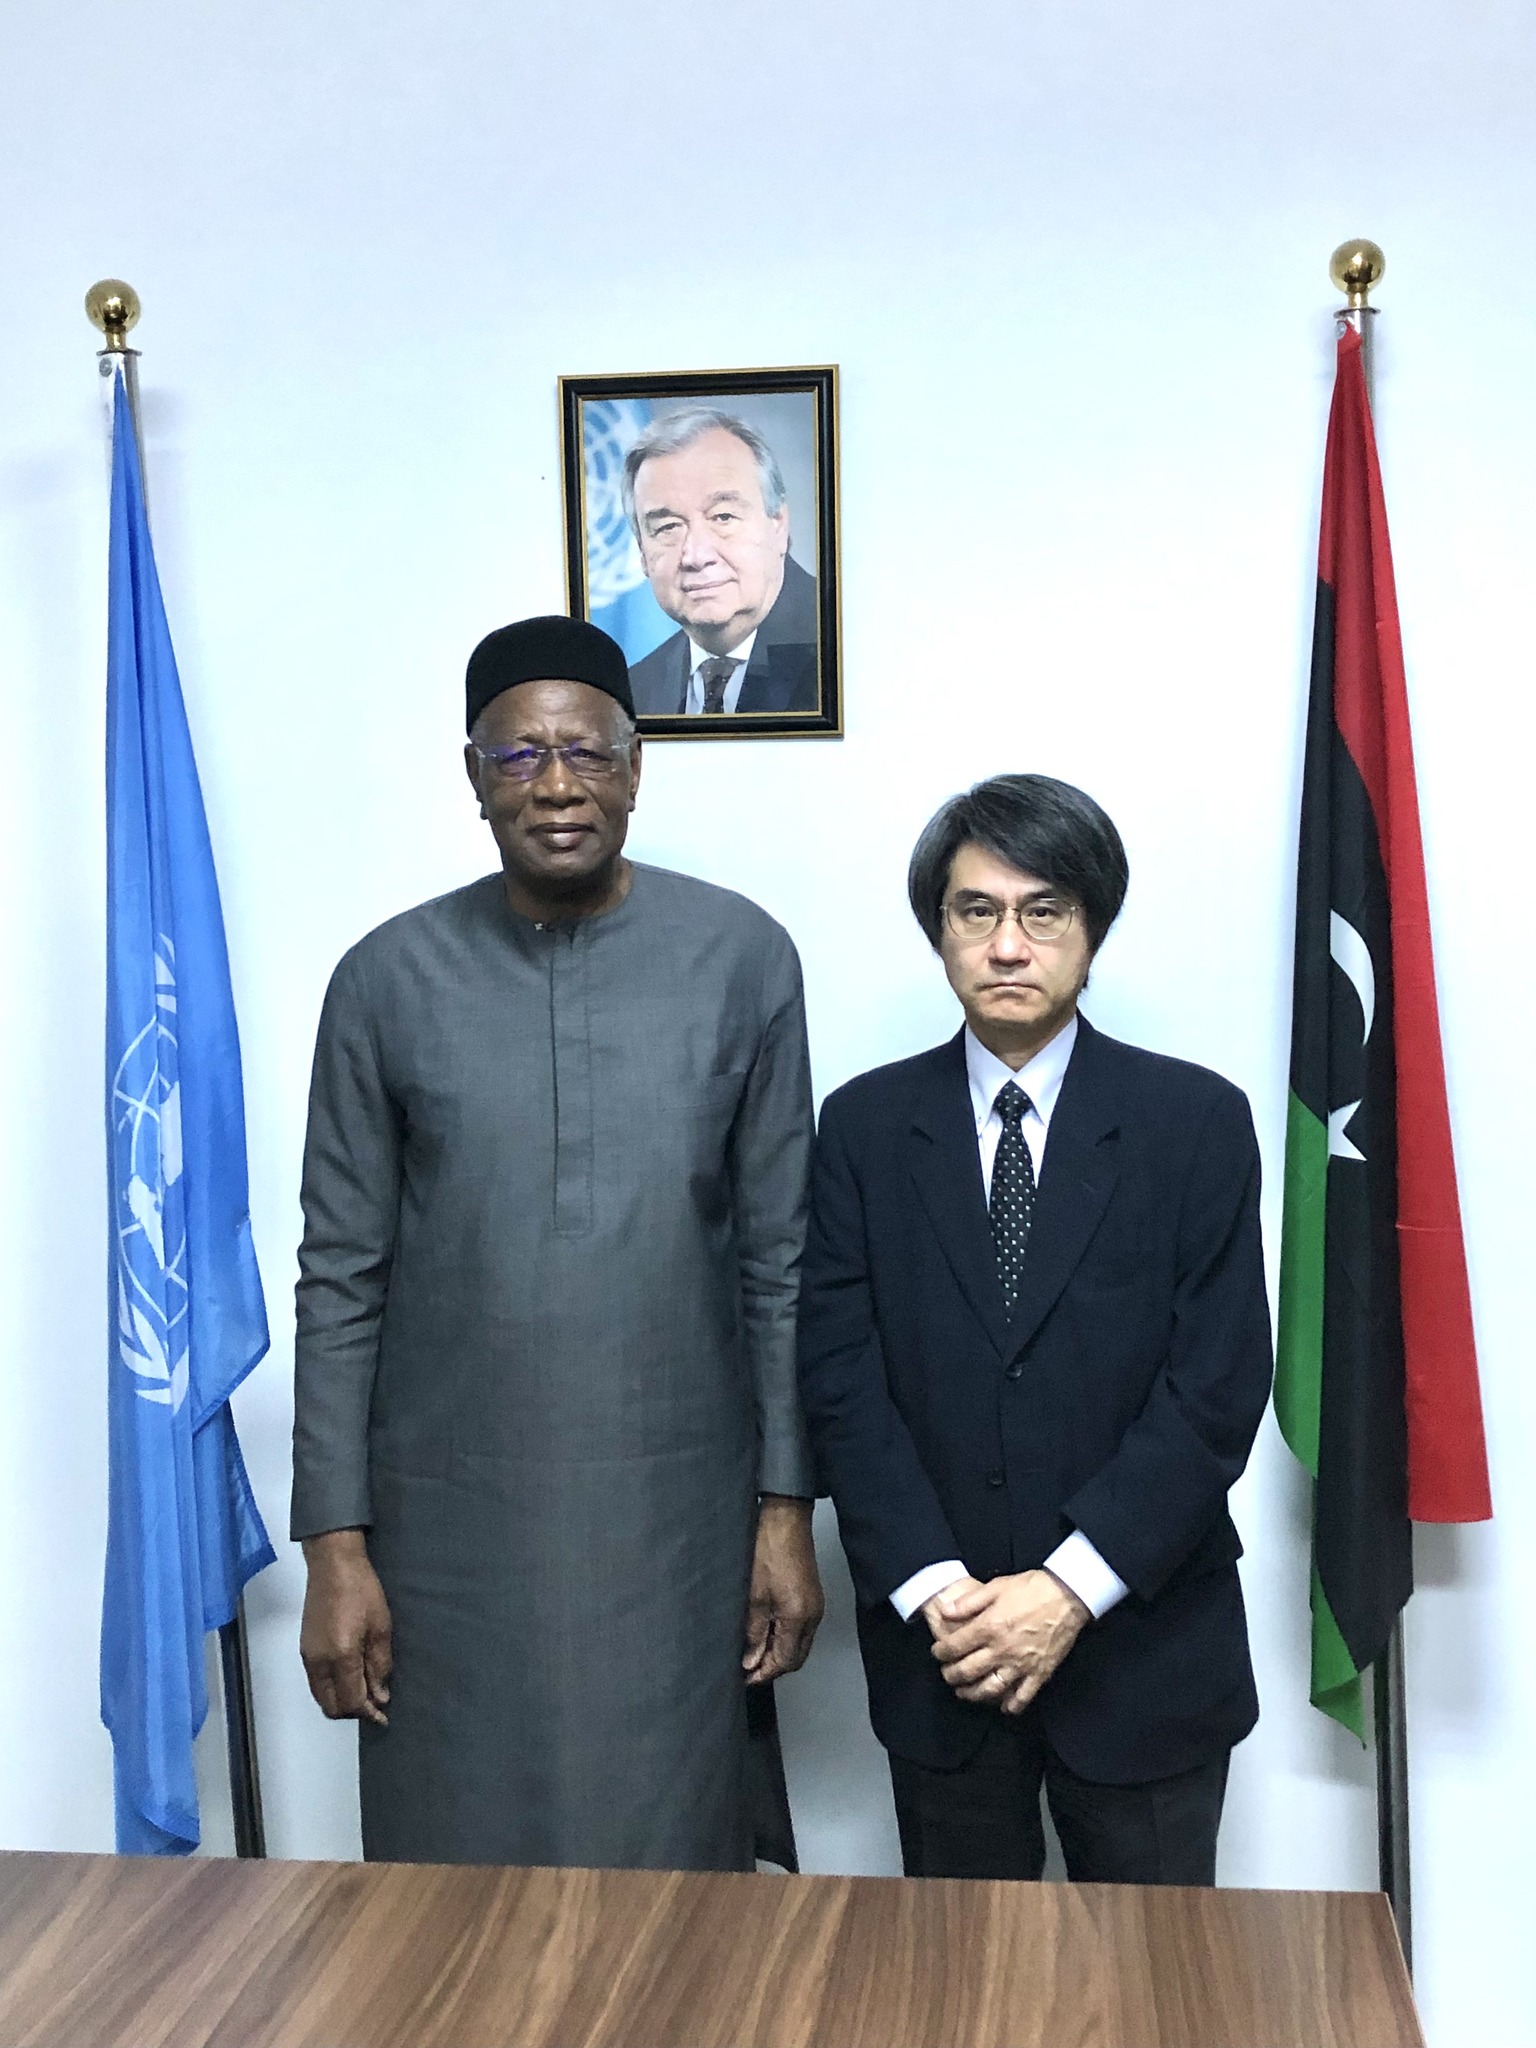 سفير اليابان يبحث مع باثيلي آخر تطورات العملية السياسية في ليبيا